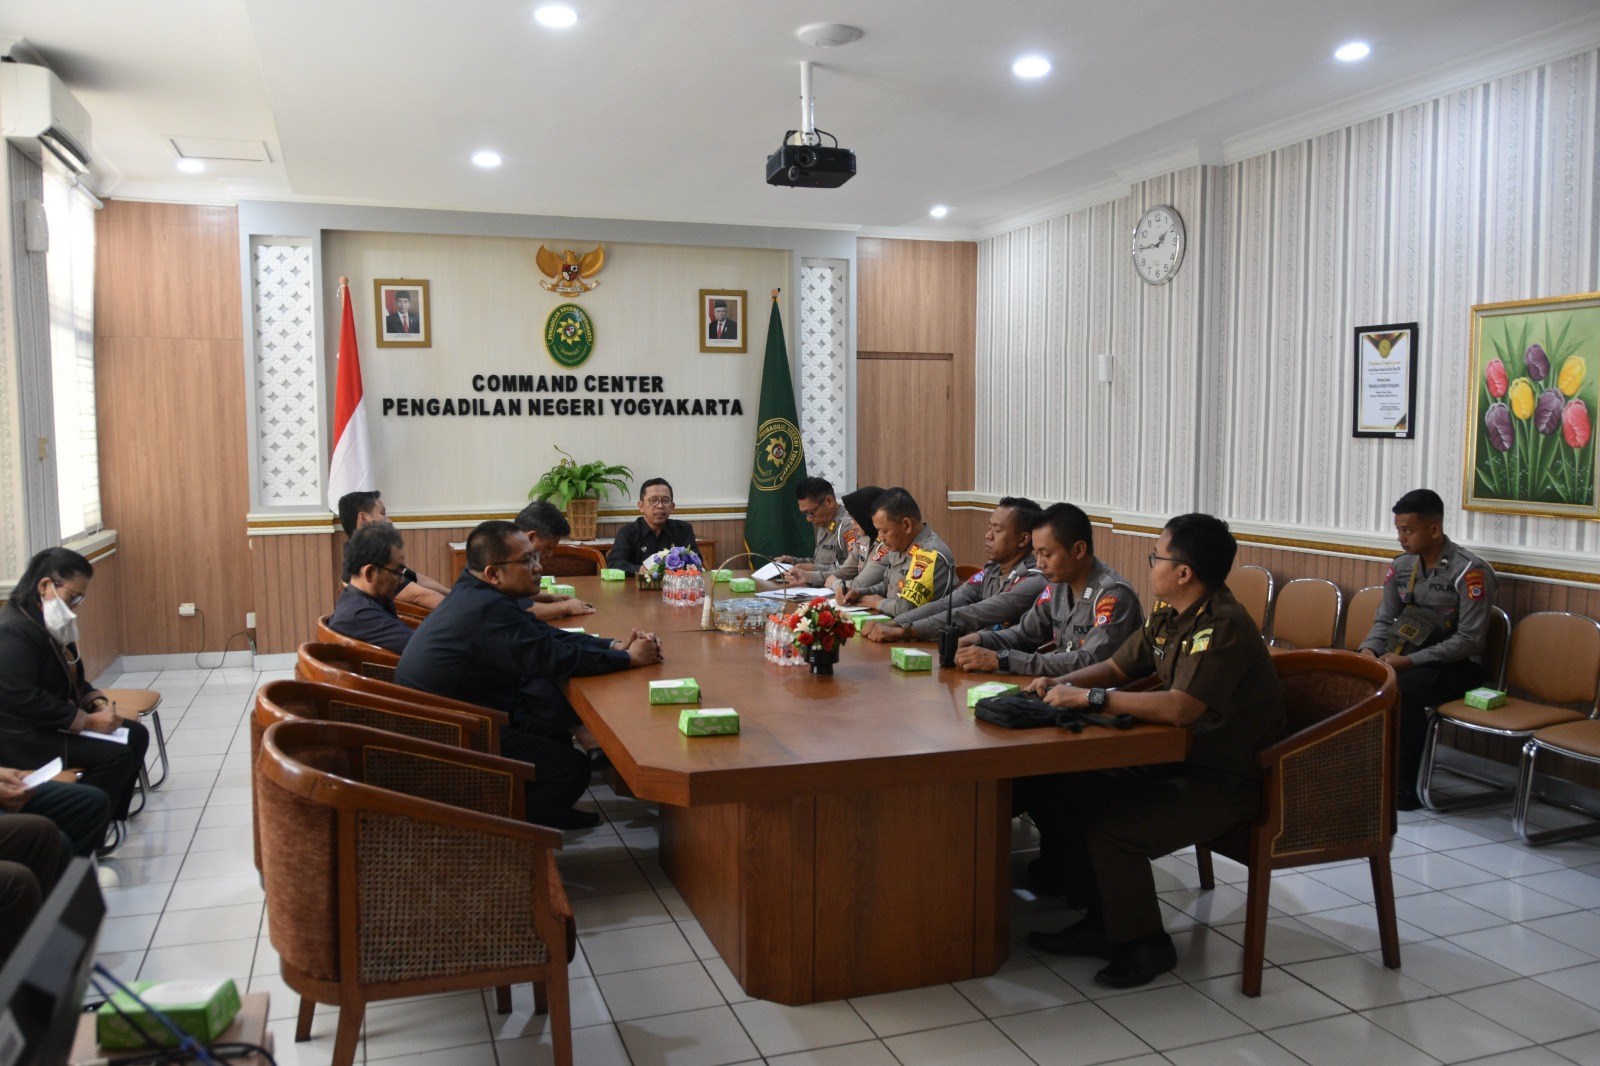 Pengadilan Negeri Yogyakarta Mengadakan Rapat Koordinasi Terkait Sidang Lalu Lintas dan Angkutan Jalan